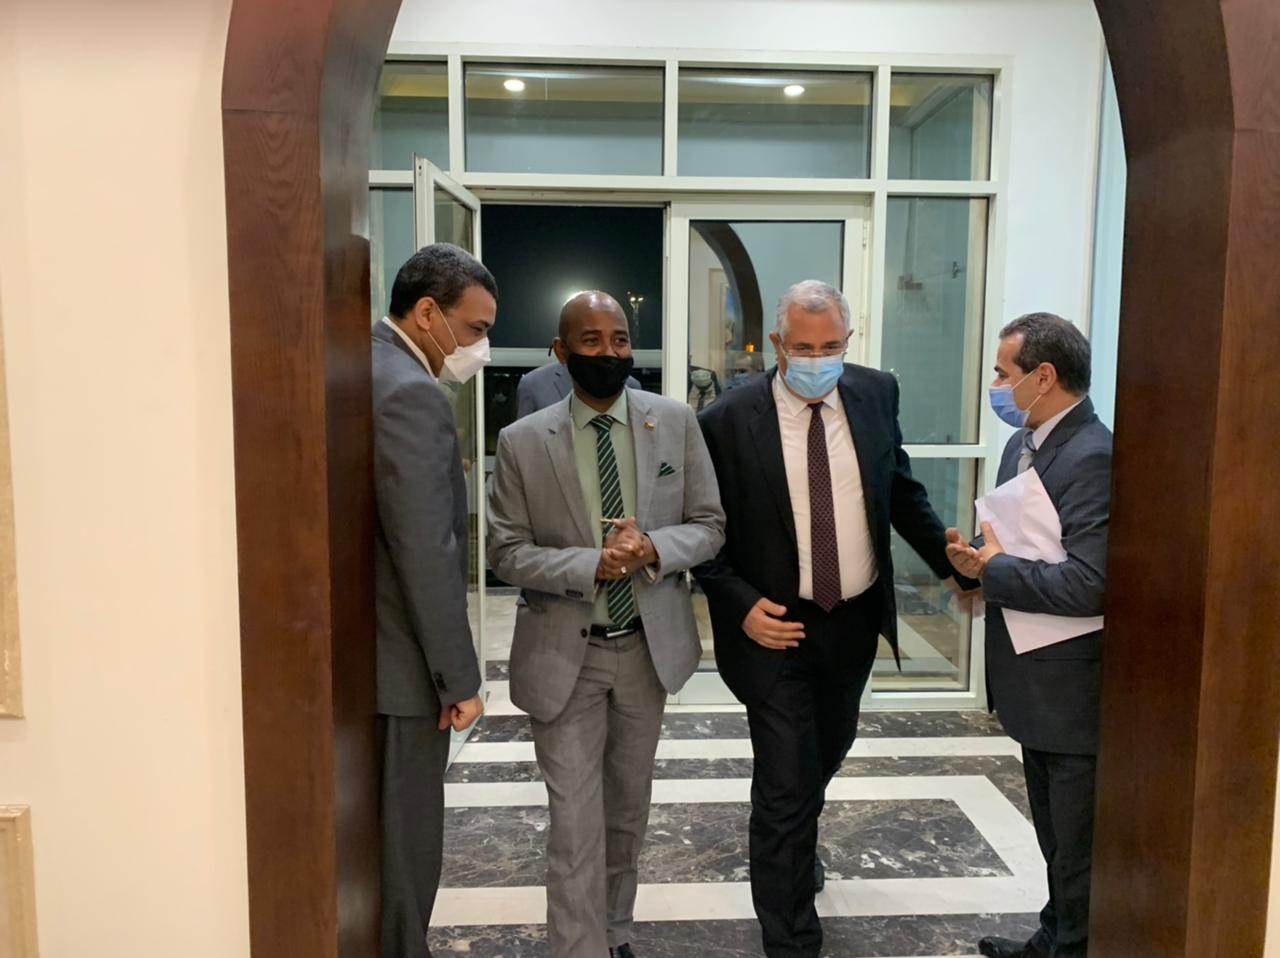 السيد القصير خلال استقباله وزير الثروة الحيوانية السوداني في مطار القاهرة 